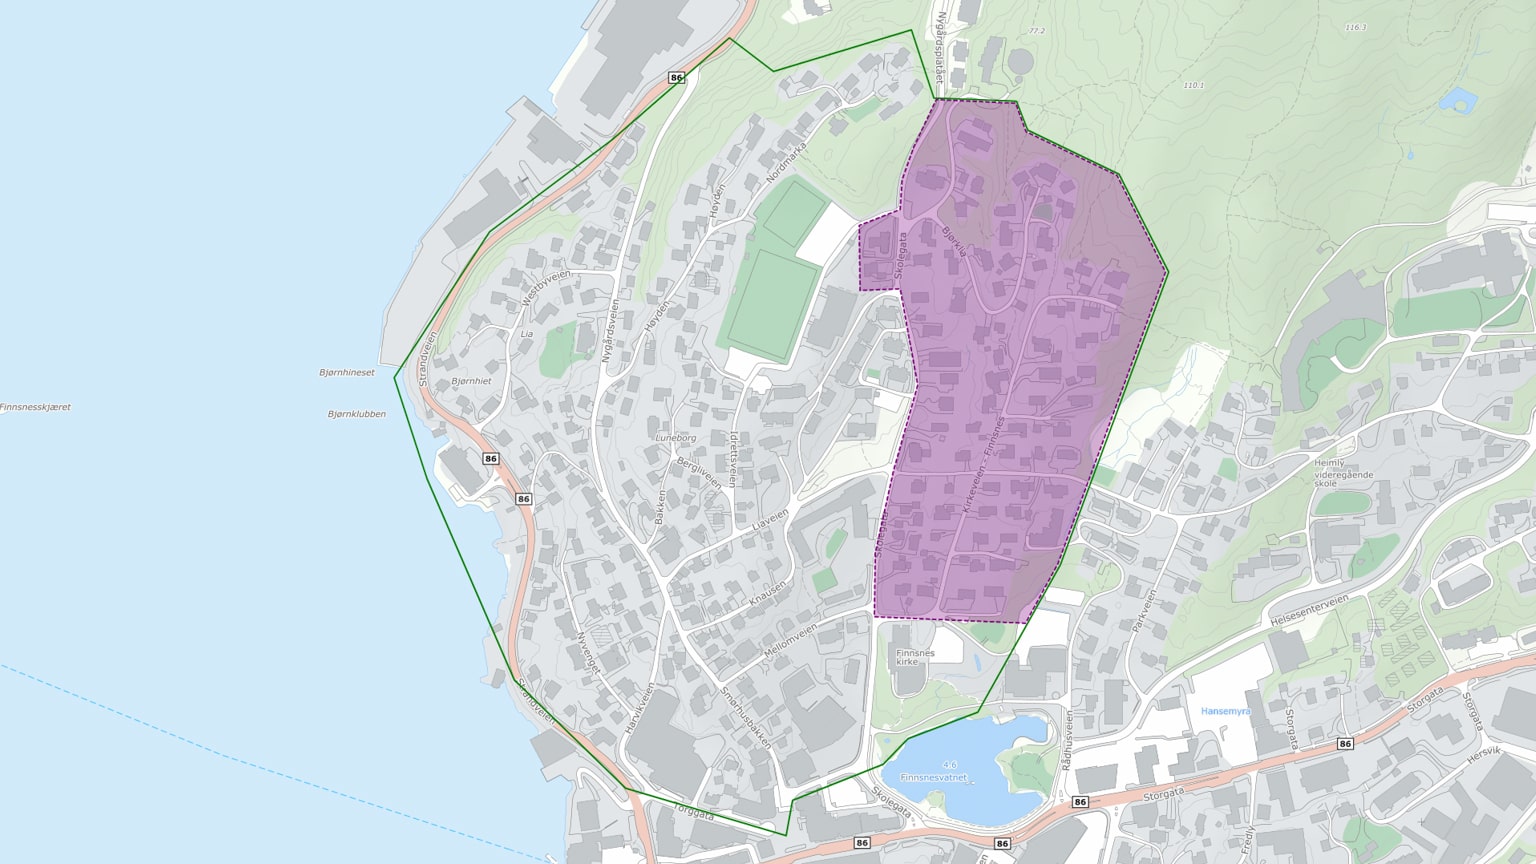 Kartutsnitt over prosjektområdet Finnsnes Vest. Et område er markert i lilla, og viser området hvor installasjoner og oppkoblinger vil finne sted i november.